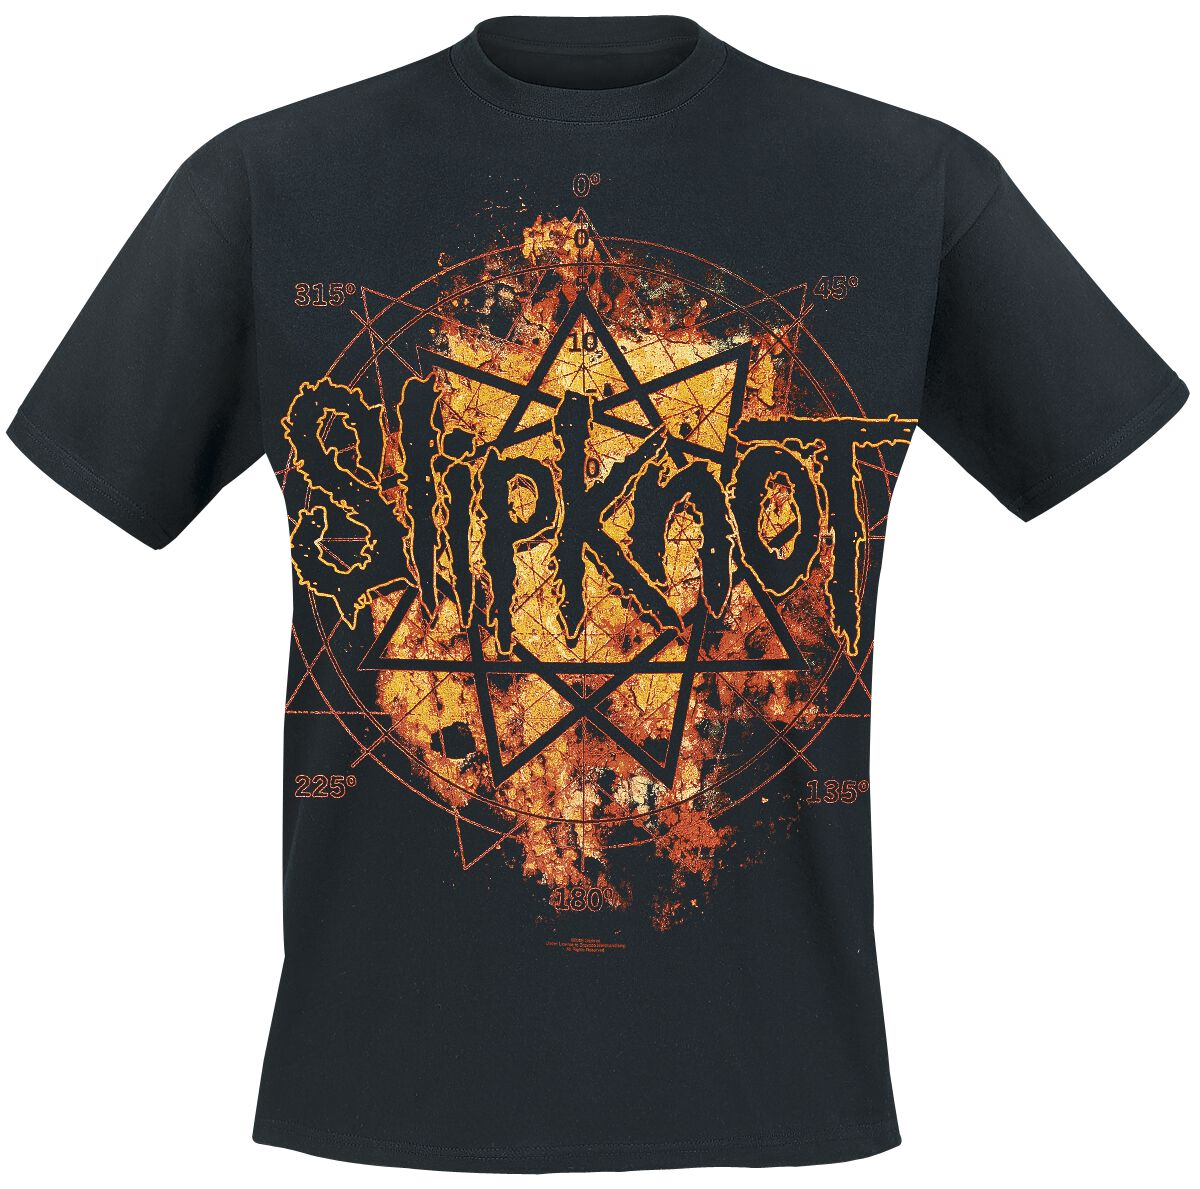 Slipknot T-Shirt - Radio Fires - S bis XXL - für Männer - Größe M - schwarz  - Lizenziertes Merchandise!